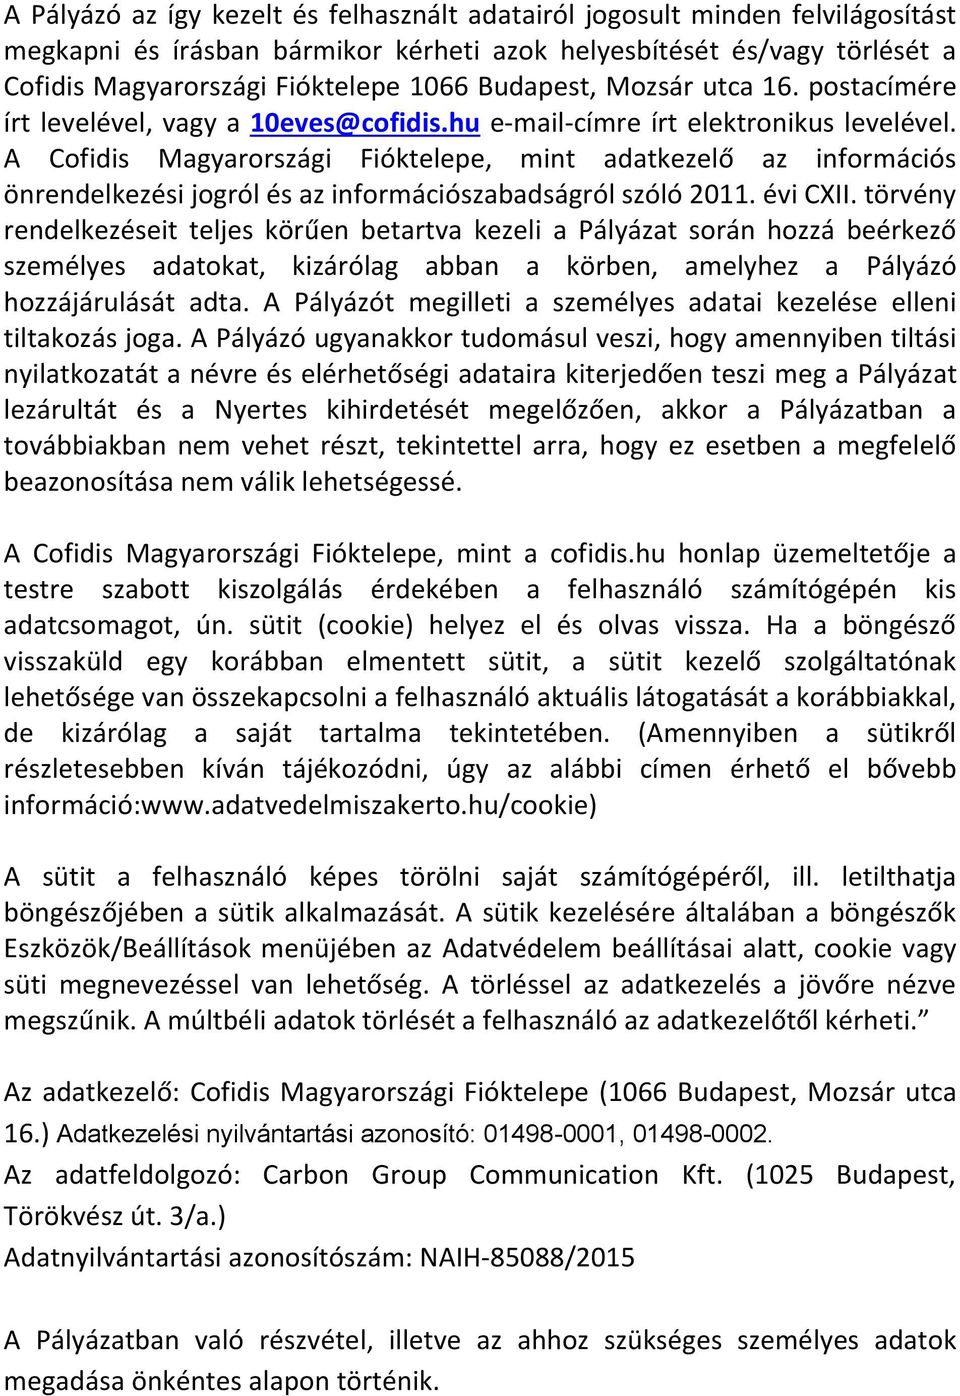 A Cofidis Magyarországi Fióktelepe, mint adatkezelő az információs önrendelkezési jogról és az információszabadságról szóló 2011. évi CXII.